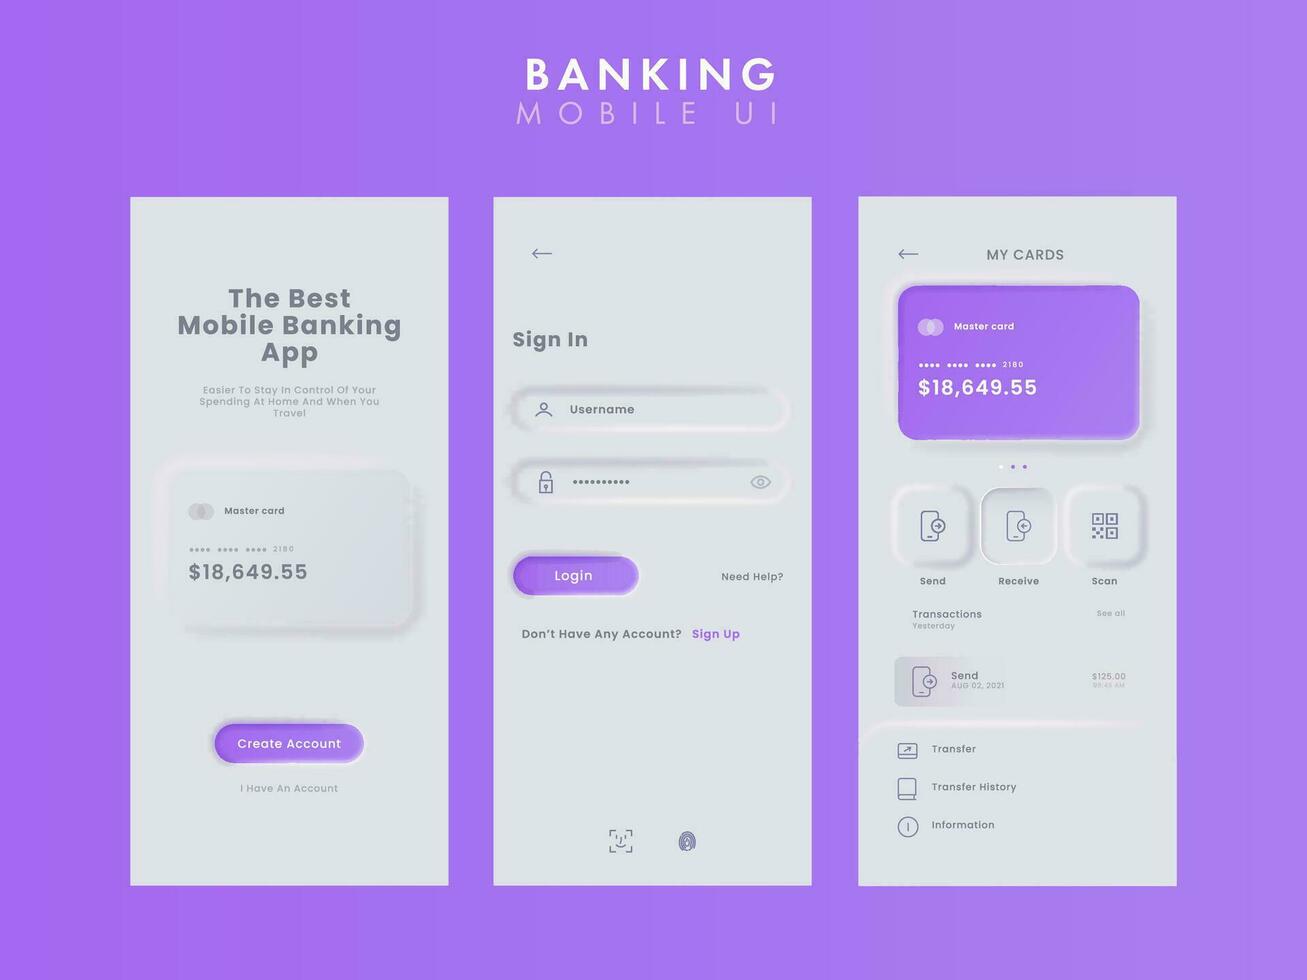 Online Banking Mobile App UI Kit Including as Login, Sign Up, Cards Details for Responsive Website. vector